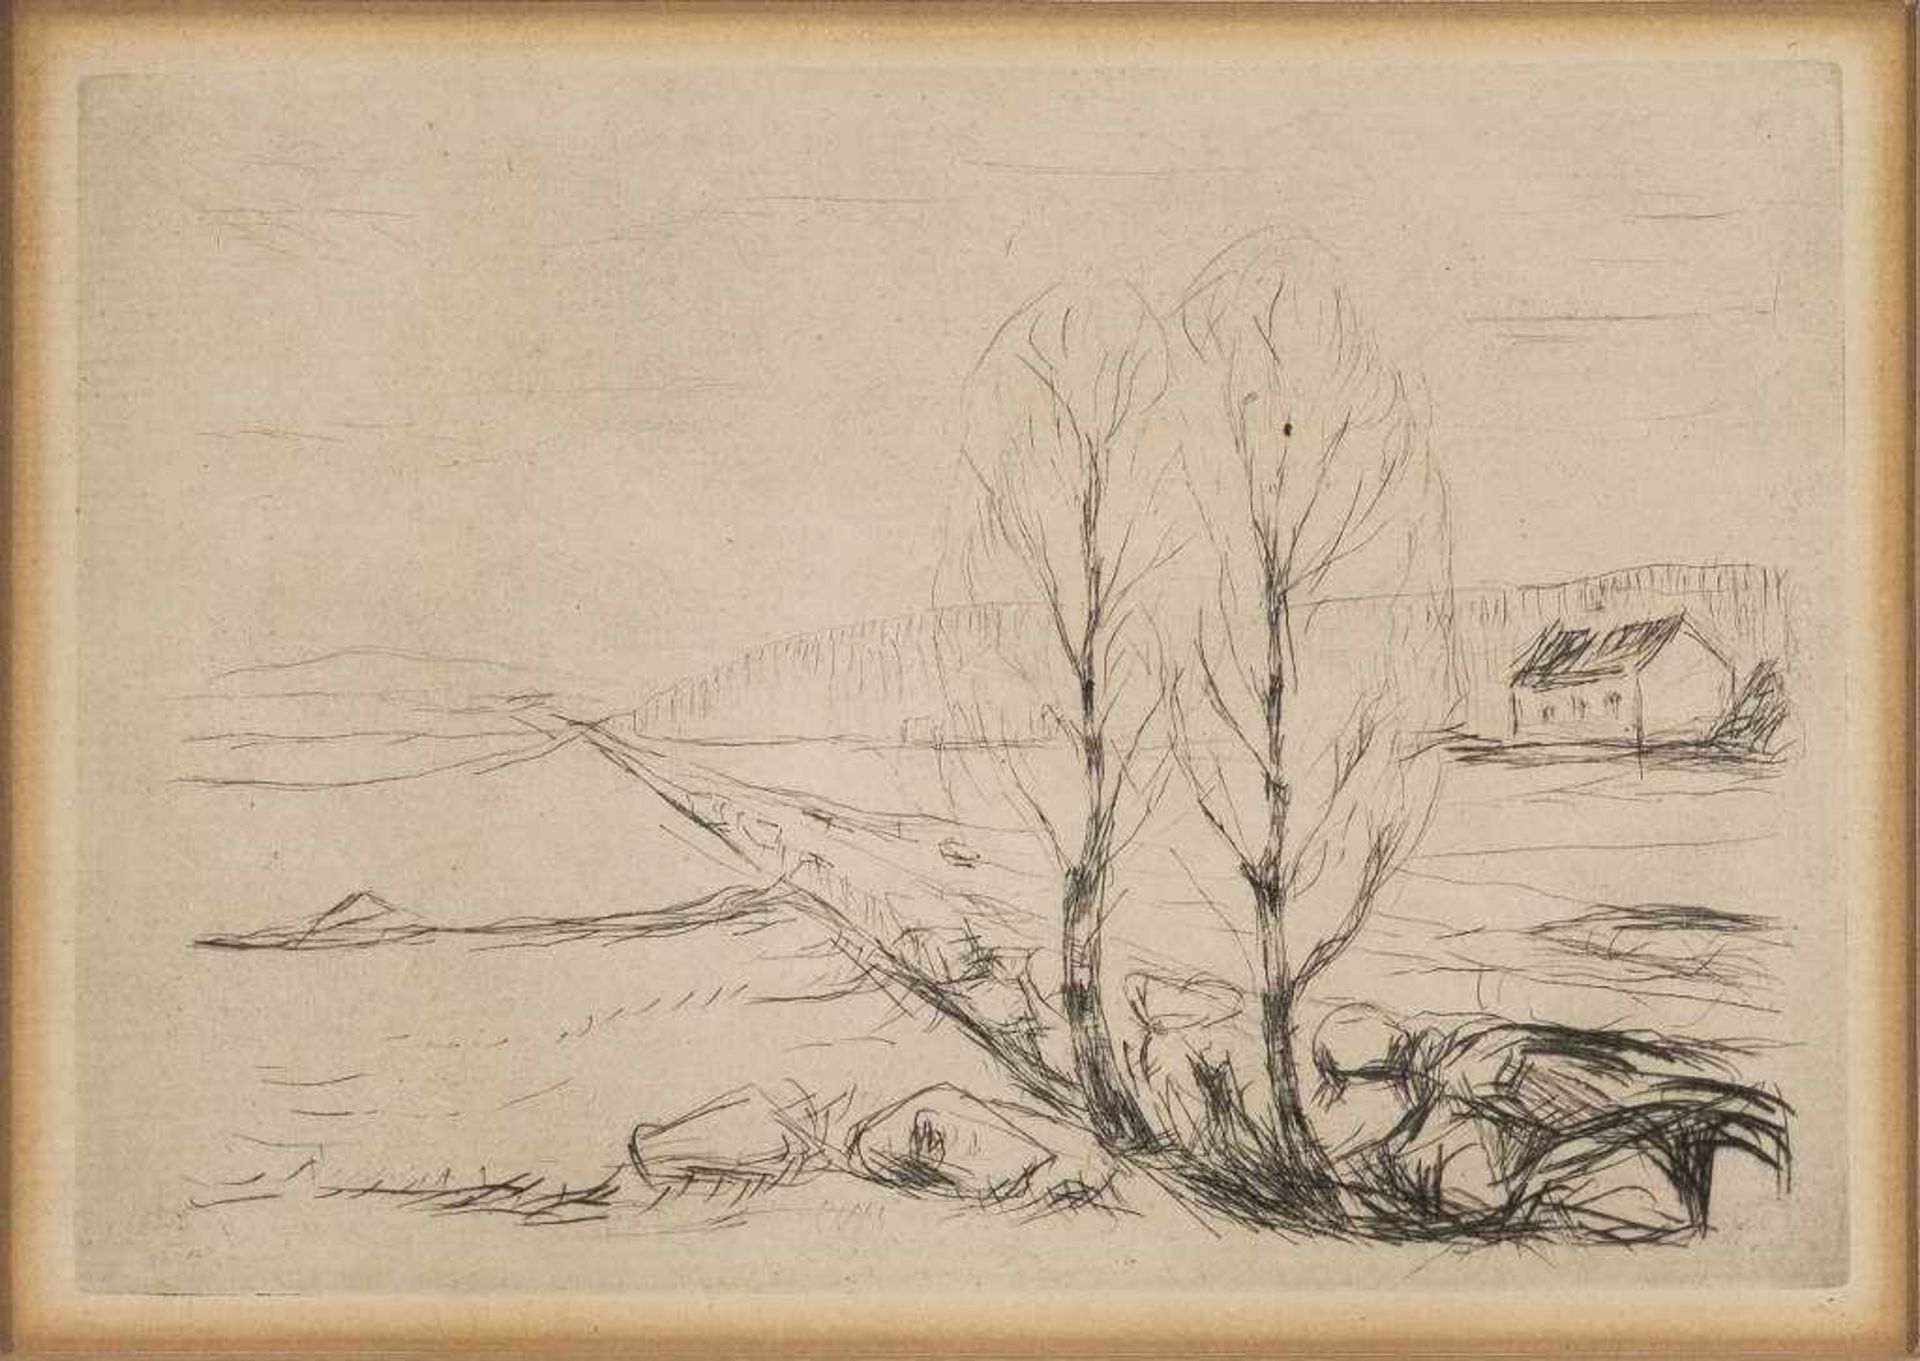 Edvard Munch. 1863 Loten - 1944 Ekely. Nordische Landschaft. Radierung. Plattengr. 10,5 x 15 cm.